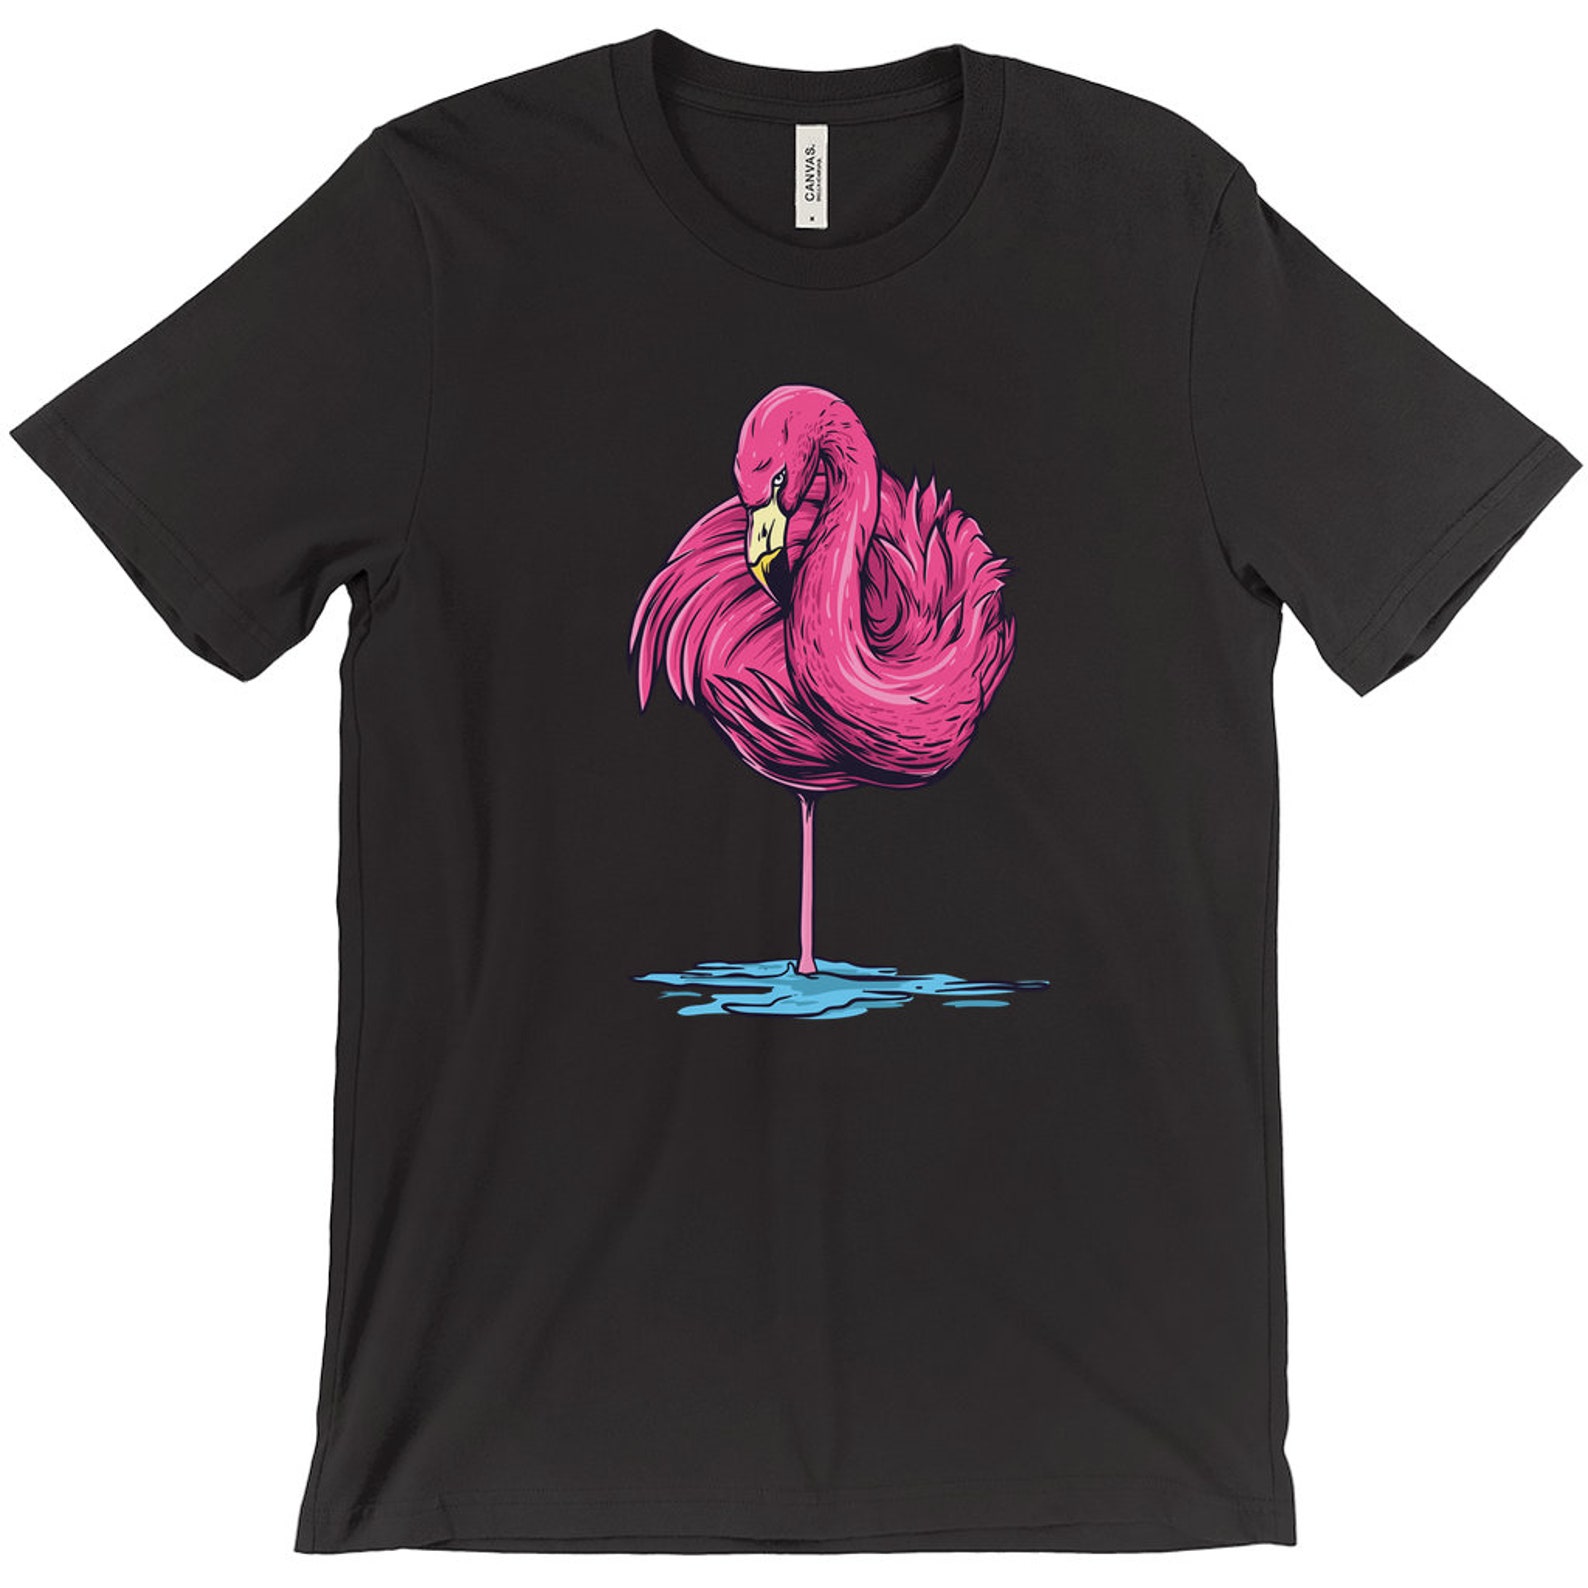 Flamingo flamingo shirt shirt with flamingo | Etsy